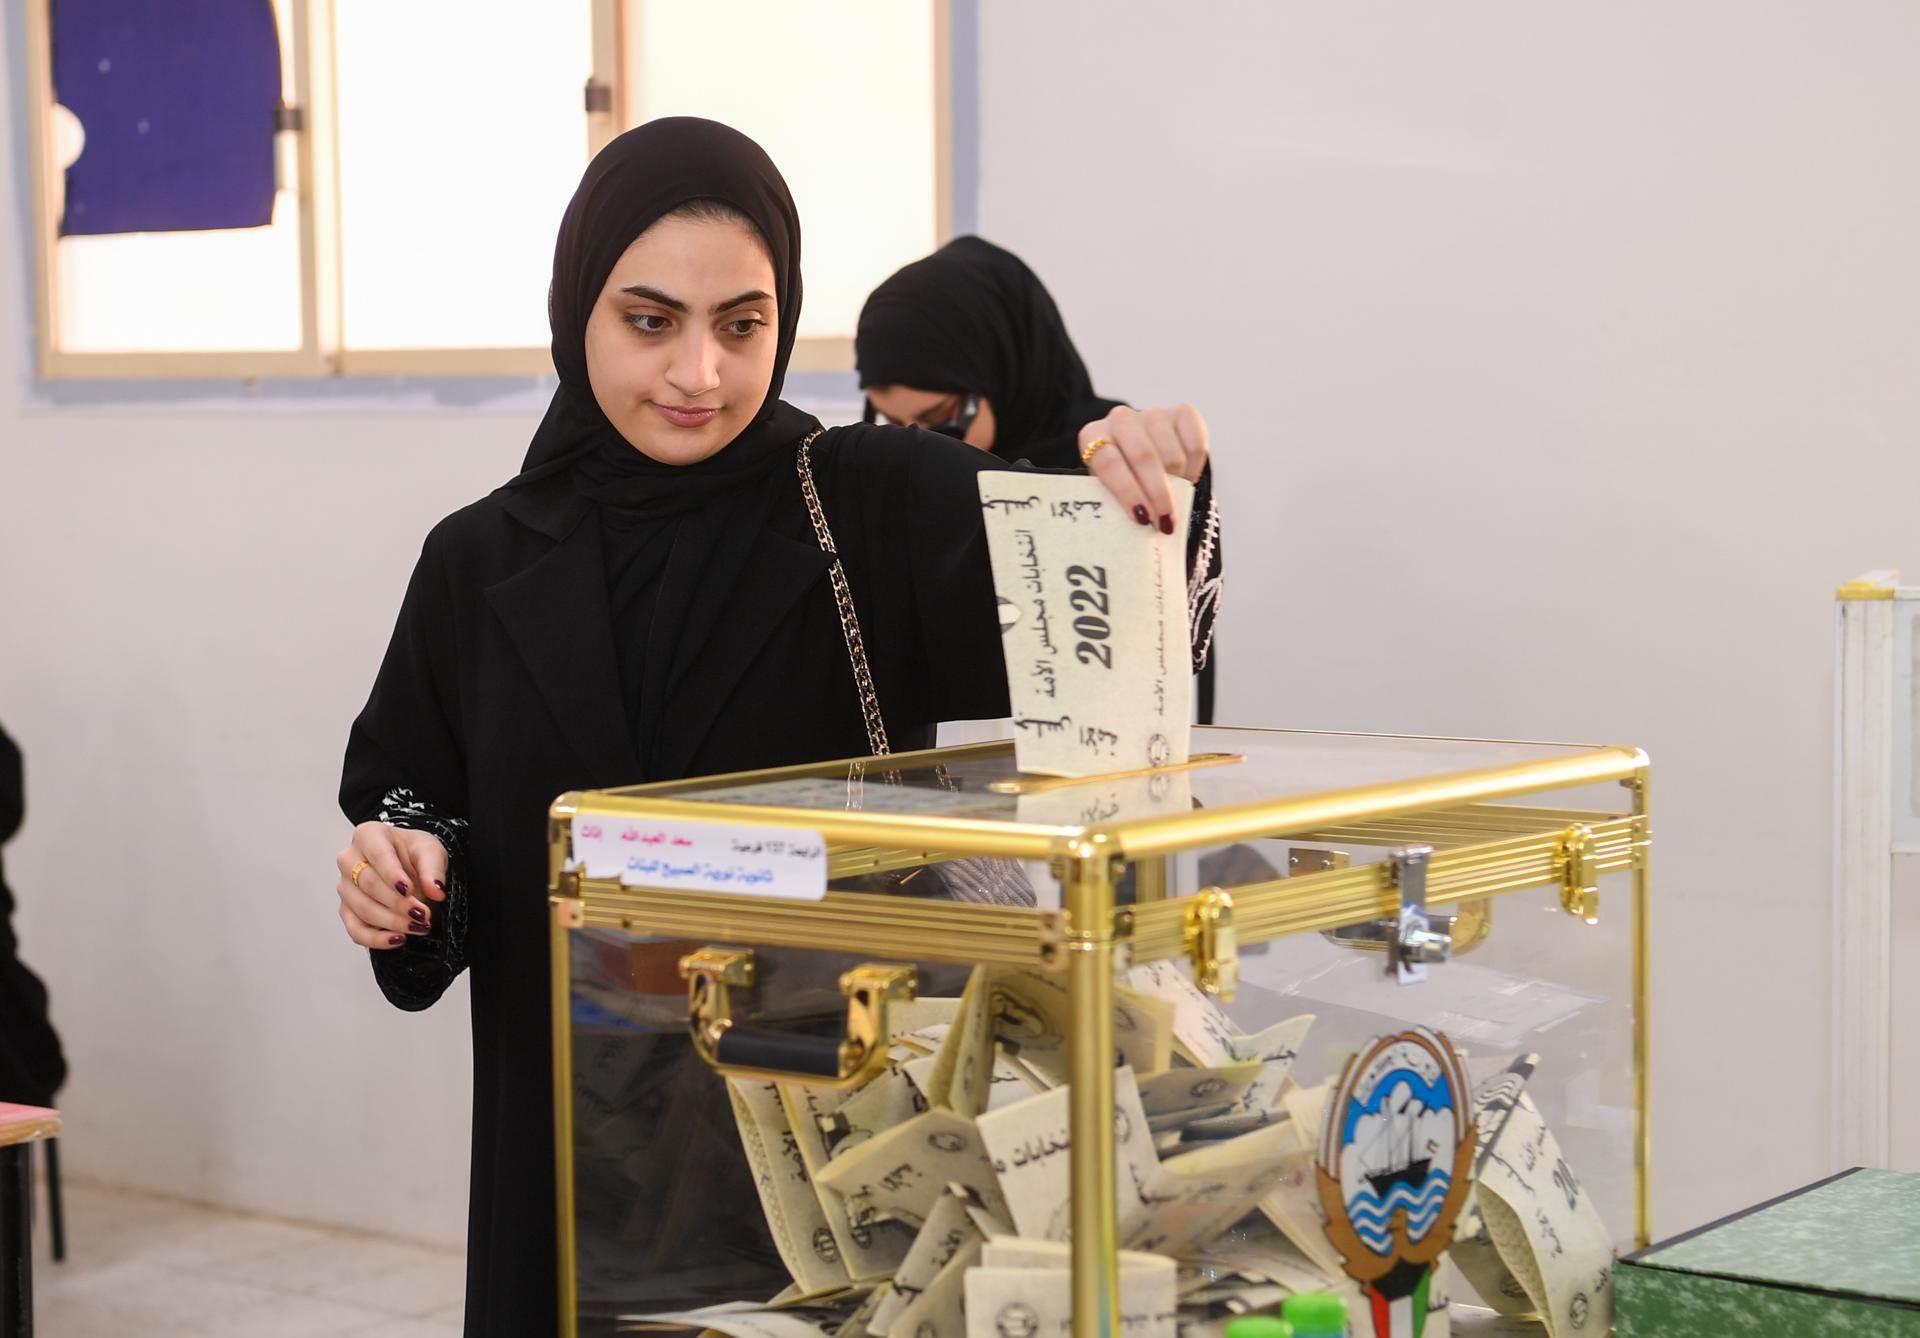 Imagen de archivo de una mujer kuwaití depositando su voto en un colegio electoral en Kuwait City (Kuwait). EFE/EPA/Noufal Ibrahim